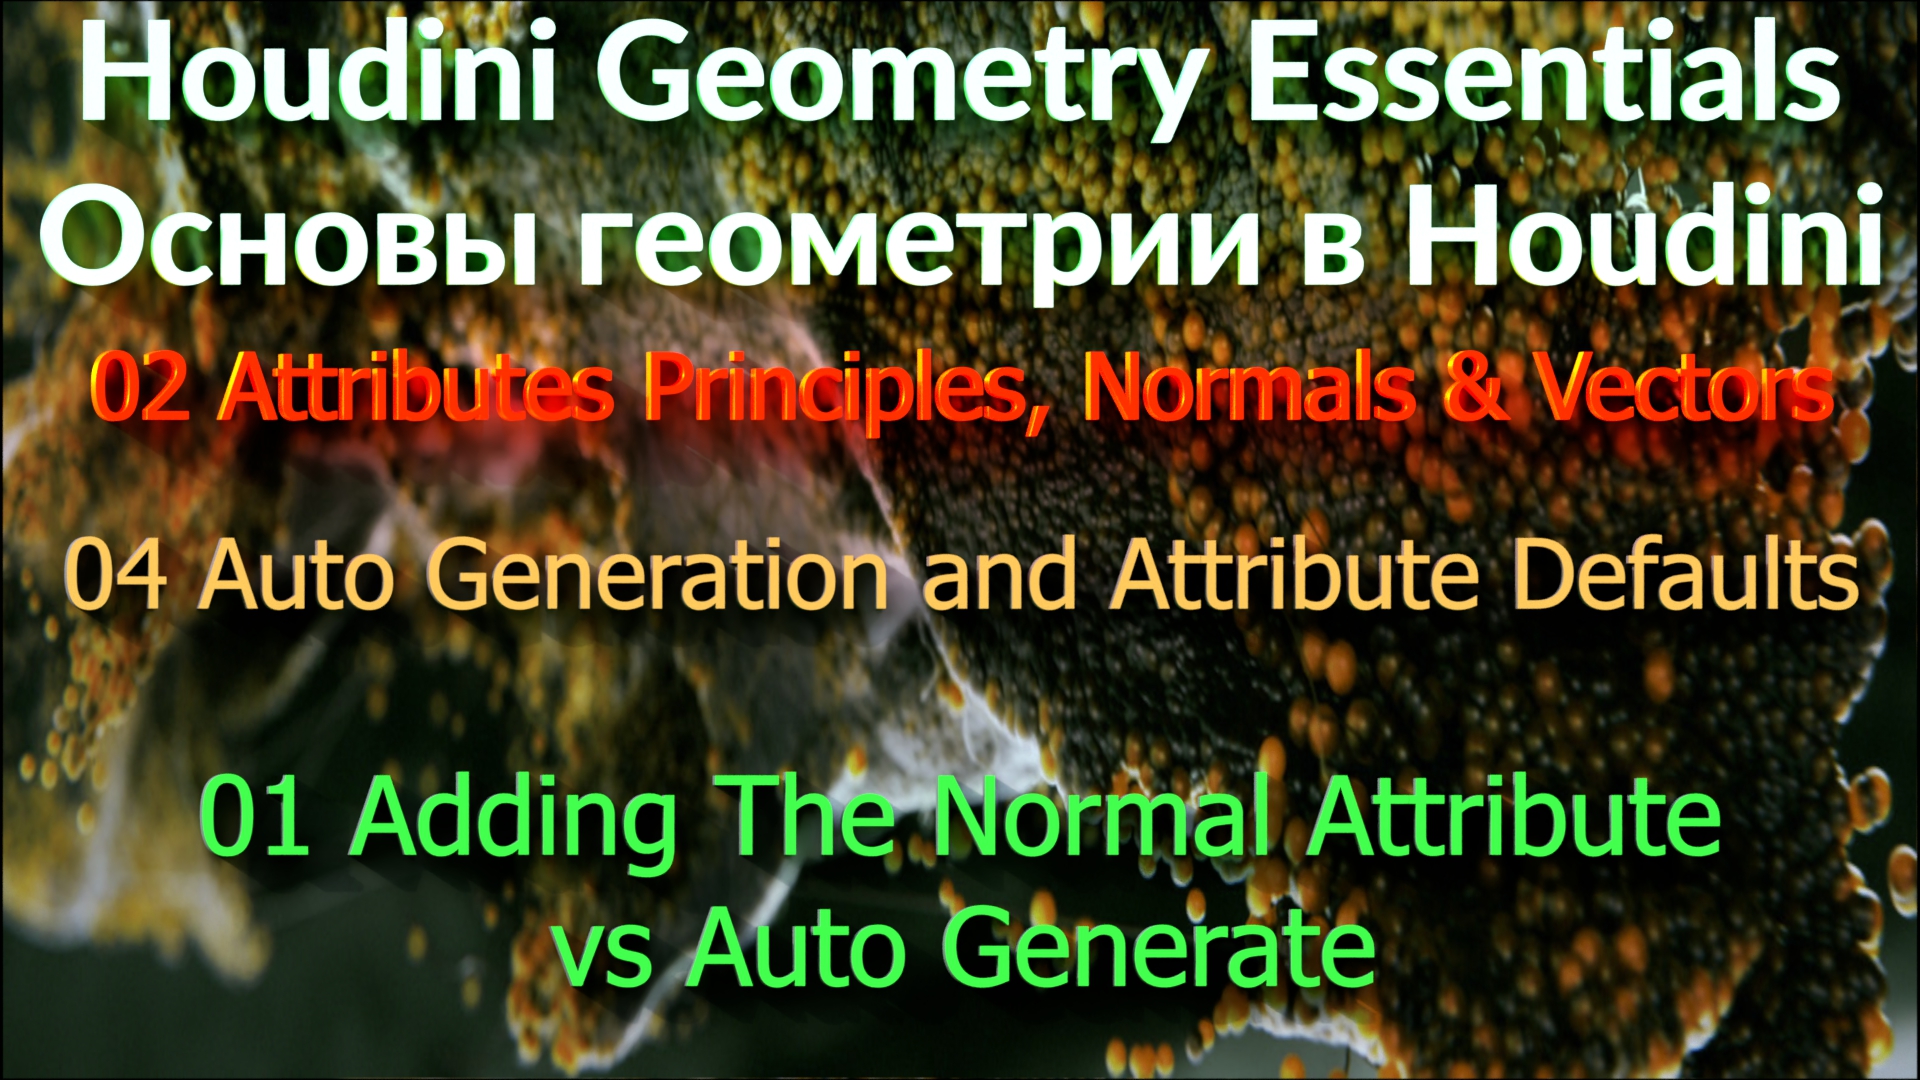 02_04_01 Adding The Normal Attribute vs Auto Generate